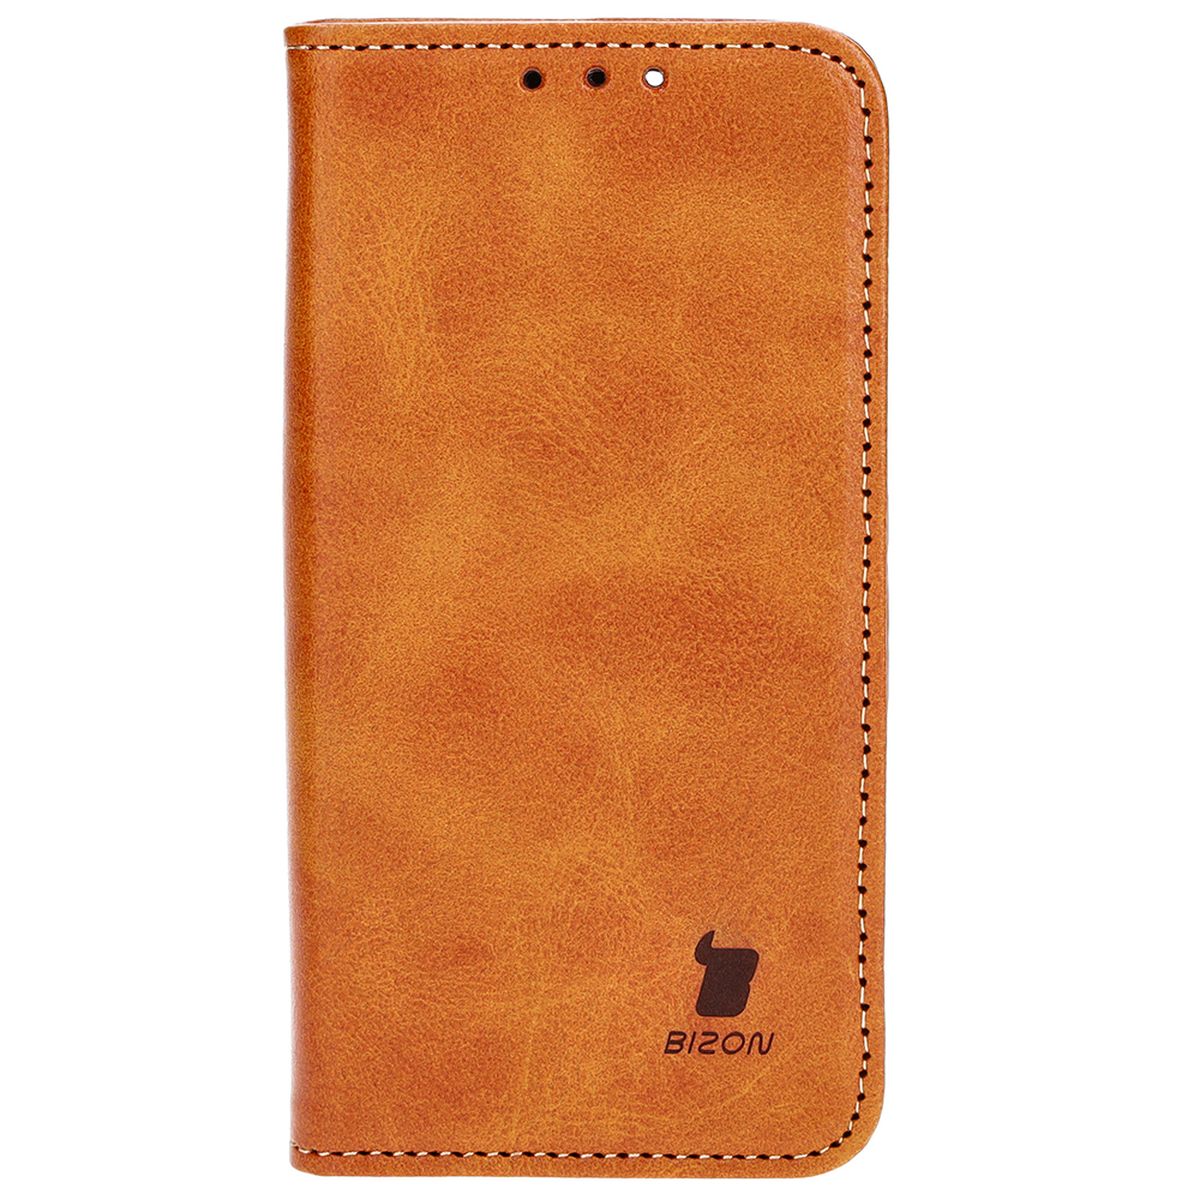 Schutzhülle Bizon Case Pocket Pro für Apple iPhone 13 Mini, Braun